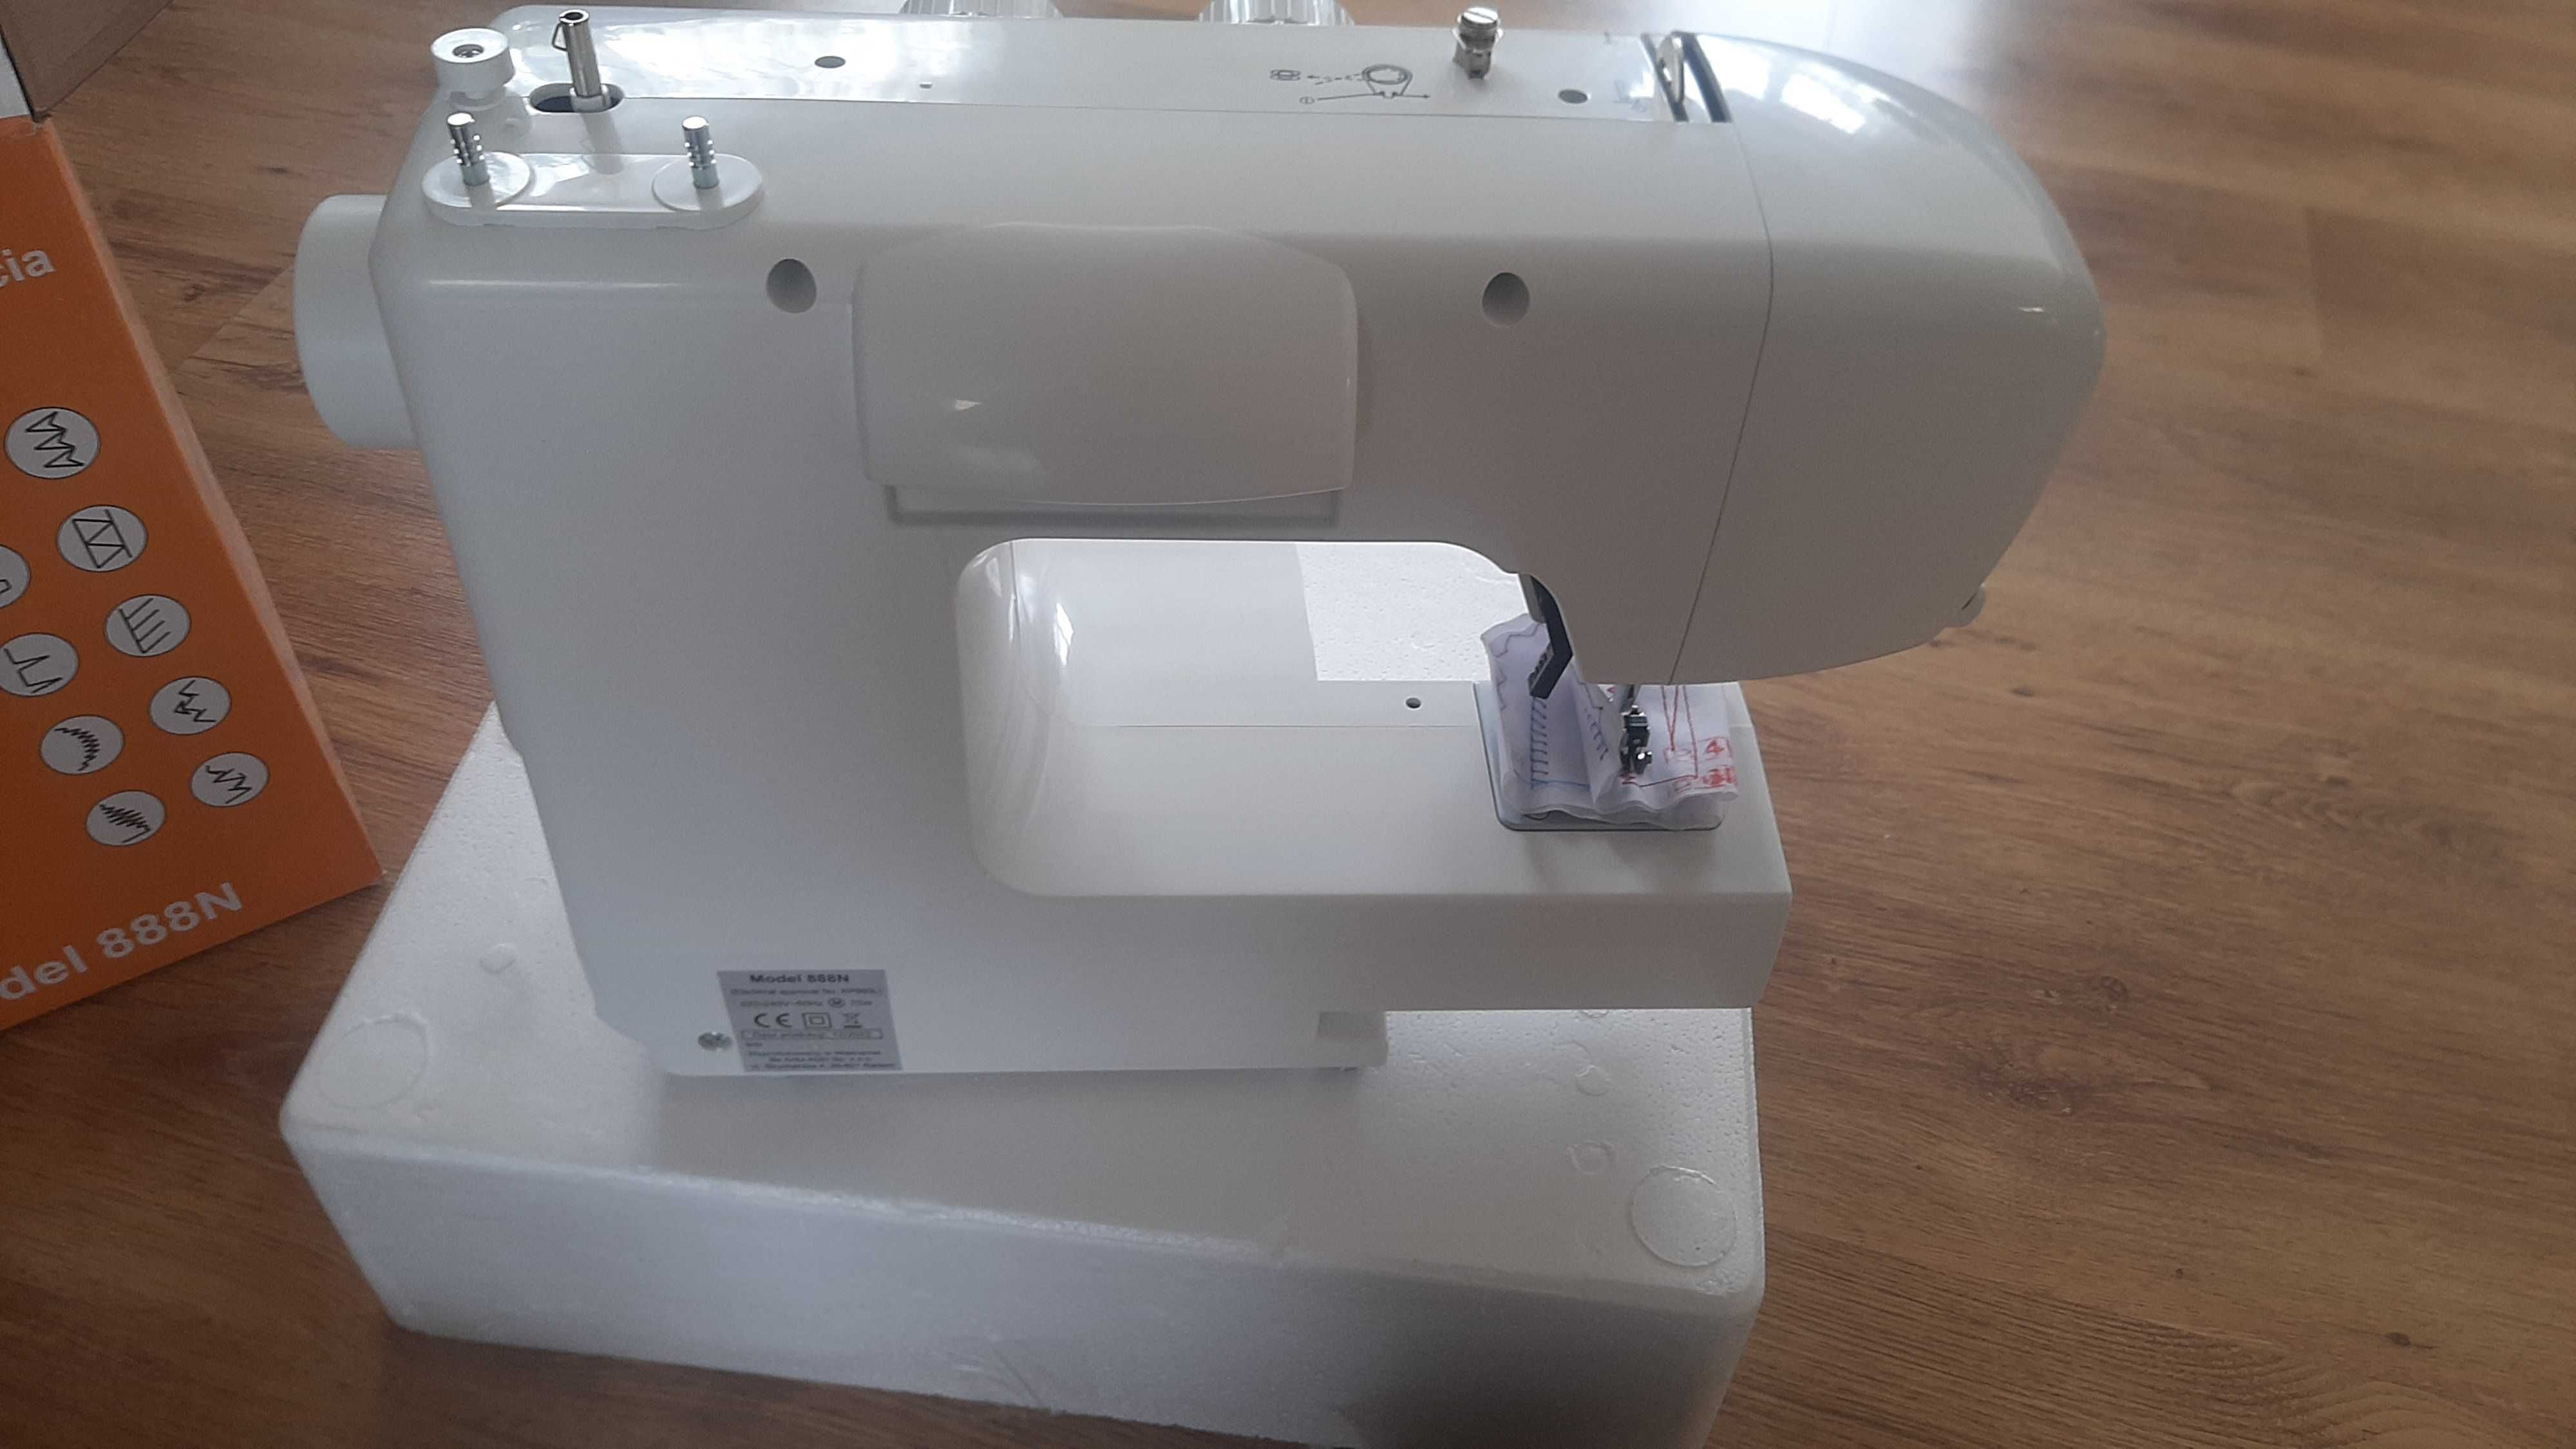 Продам швейну машину Arka Radom 888N в повній комплектації